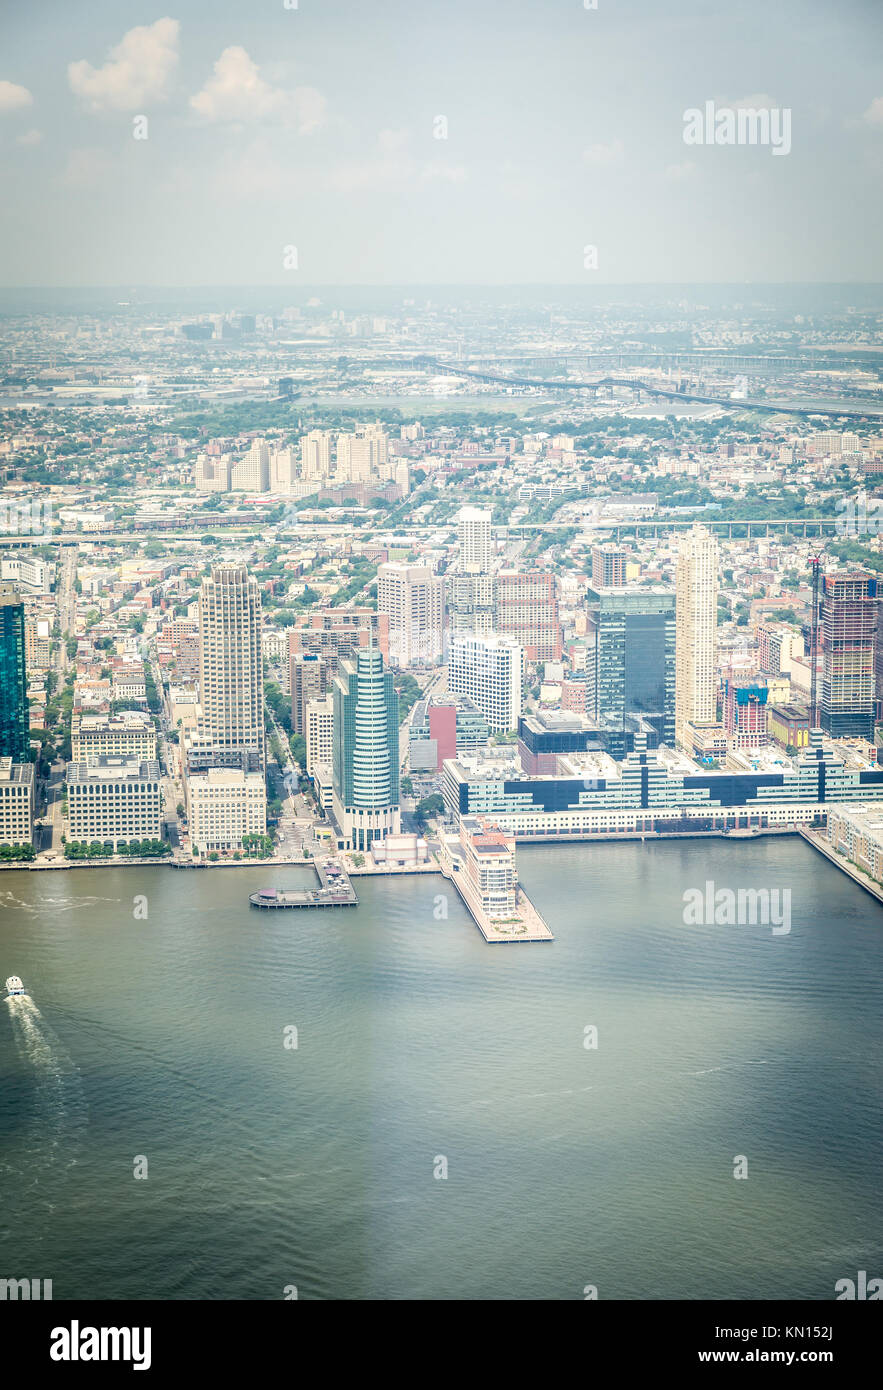 NEW YORK CITY - Juli 13: Luftaufnahme auf Jersey City am 13. Juli 2015 in New York. Jersey City ist die bevölkerungsreichste Stadt im US-Bundesstaat Ne Stockfoto